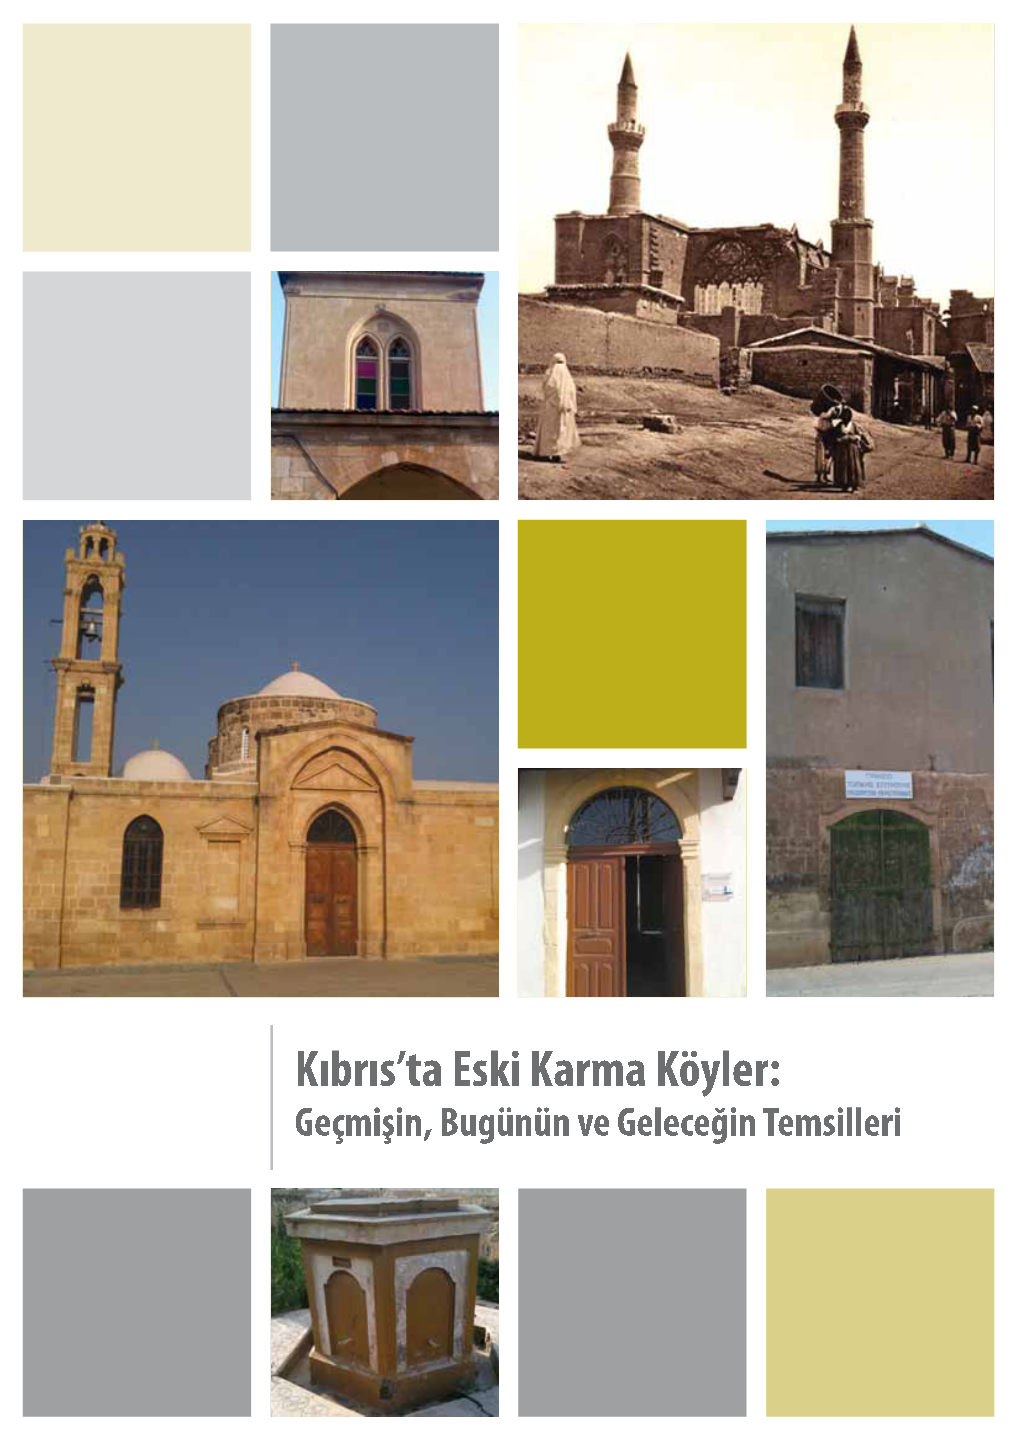 Kıbrıs'ta Eski Karma Köy Yaşamını Araştırmanın Önemi